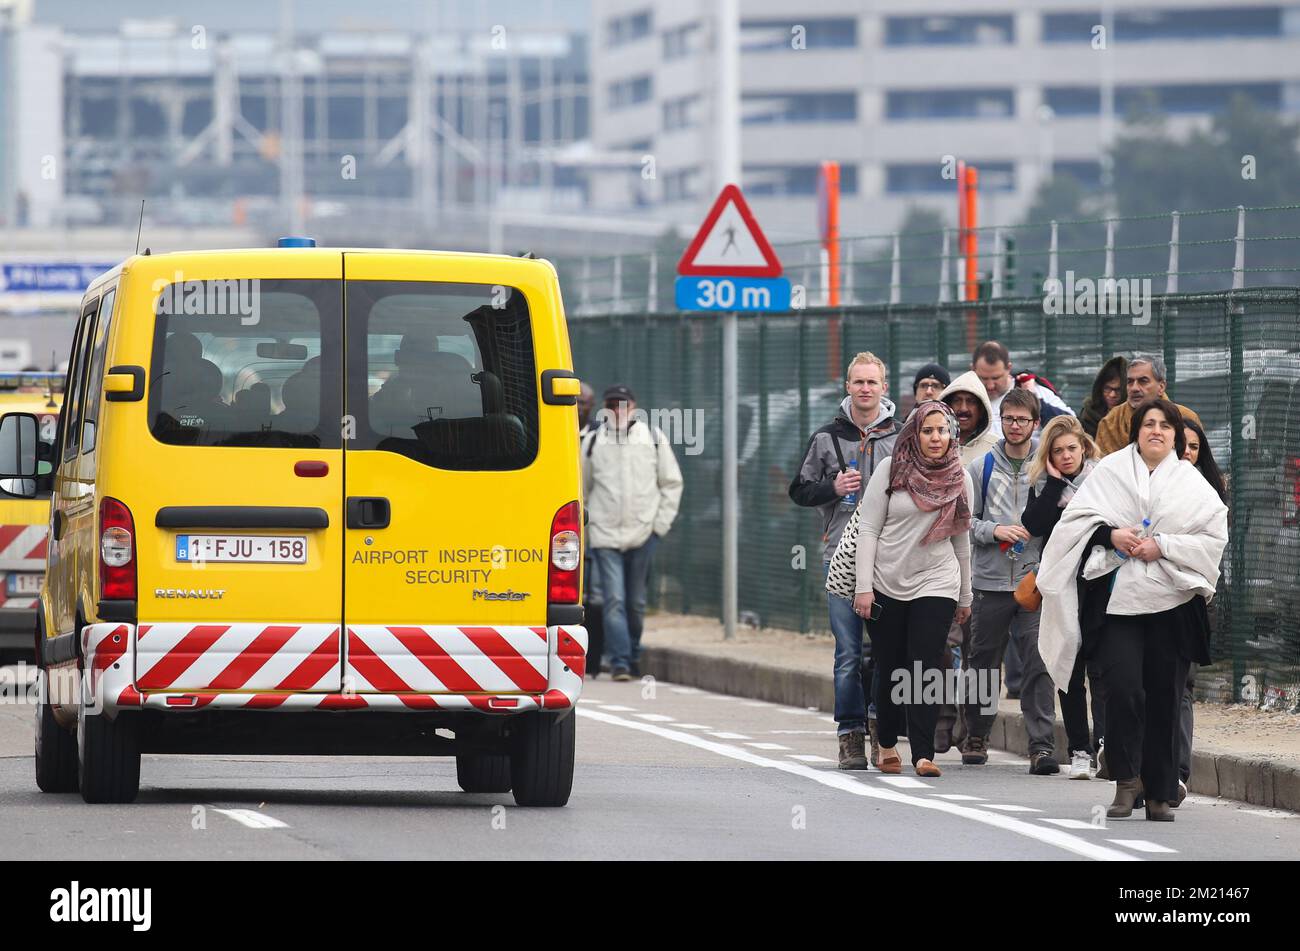 Passeggeri evacuati nella foto vicino all'aeroporto di Bruxelles, a Zaventem, martedì 22 marzo 2016. Due esplosioni nella sala partenze dell'aeroporto di Bruxelles questa mattina hanno causato la morte di 11 persone, 81 ferite. Un'altra esplosione è avvenuta nella stazione della metropolitana Maelbeek - Maalbeek, la compagnia di trasporti pubblici di Bruxelles STIB-MIVB ha confermato 15 morti e 55 feriti. Fonti governative parlano di un attacco terroristico. Il livello di minaccia terroristica è stato aumentato a quattro in tutto il paese. Foto Stock